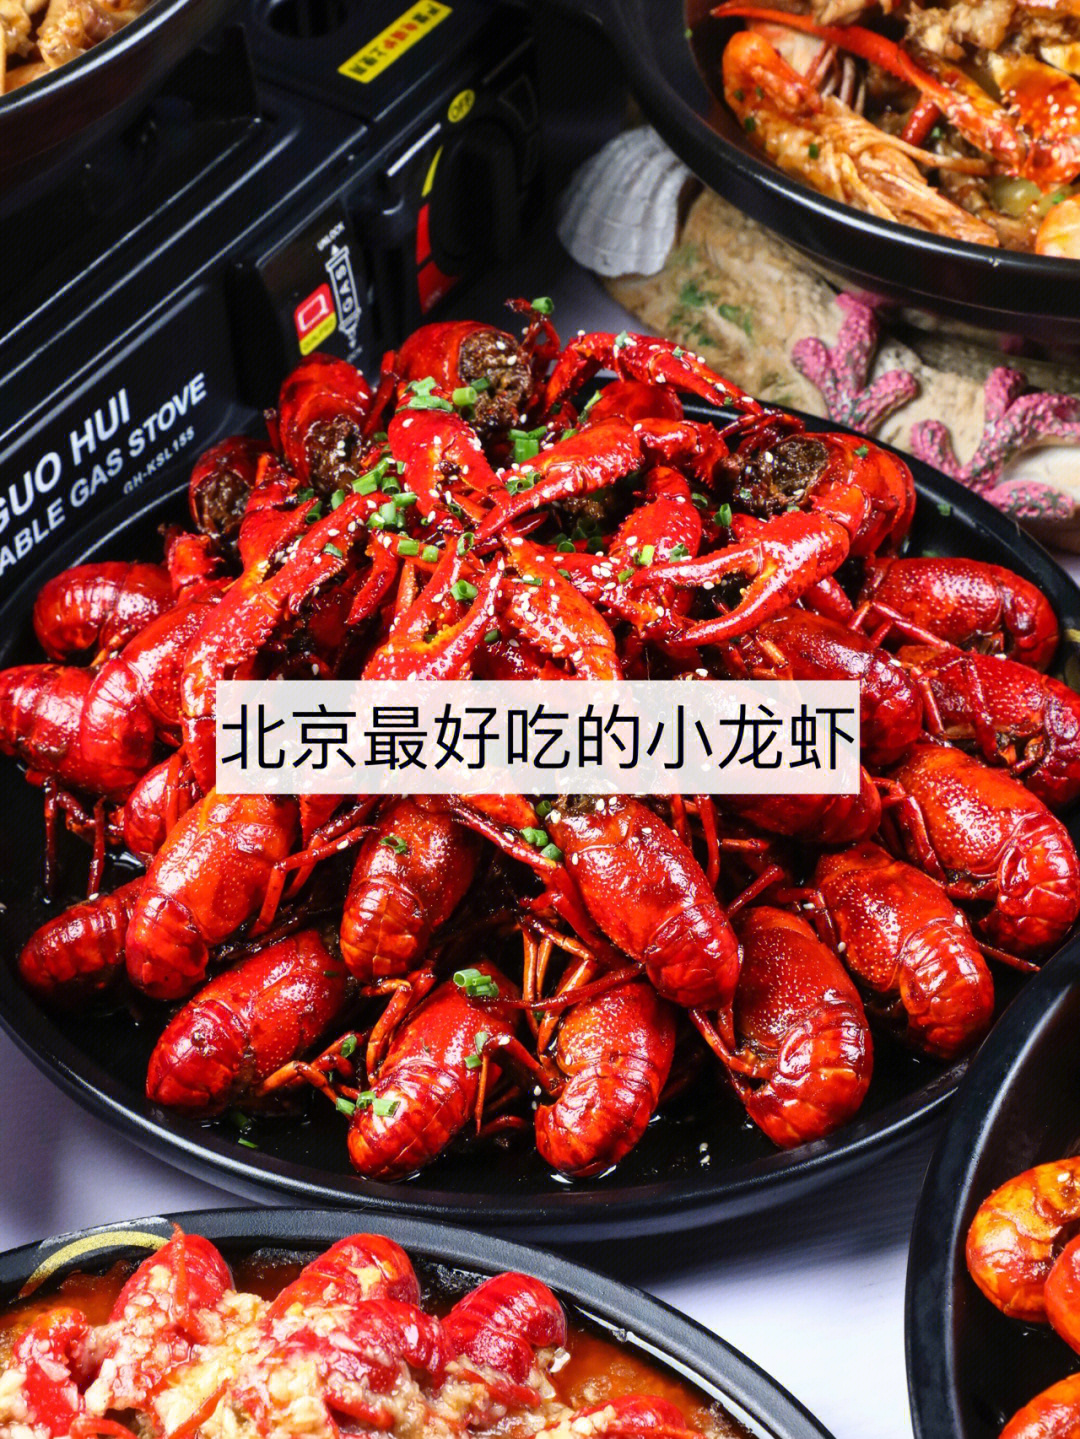 松哥油焖大虾菜单图片